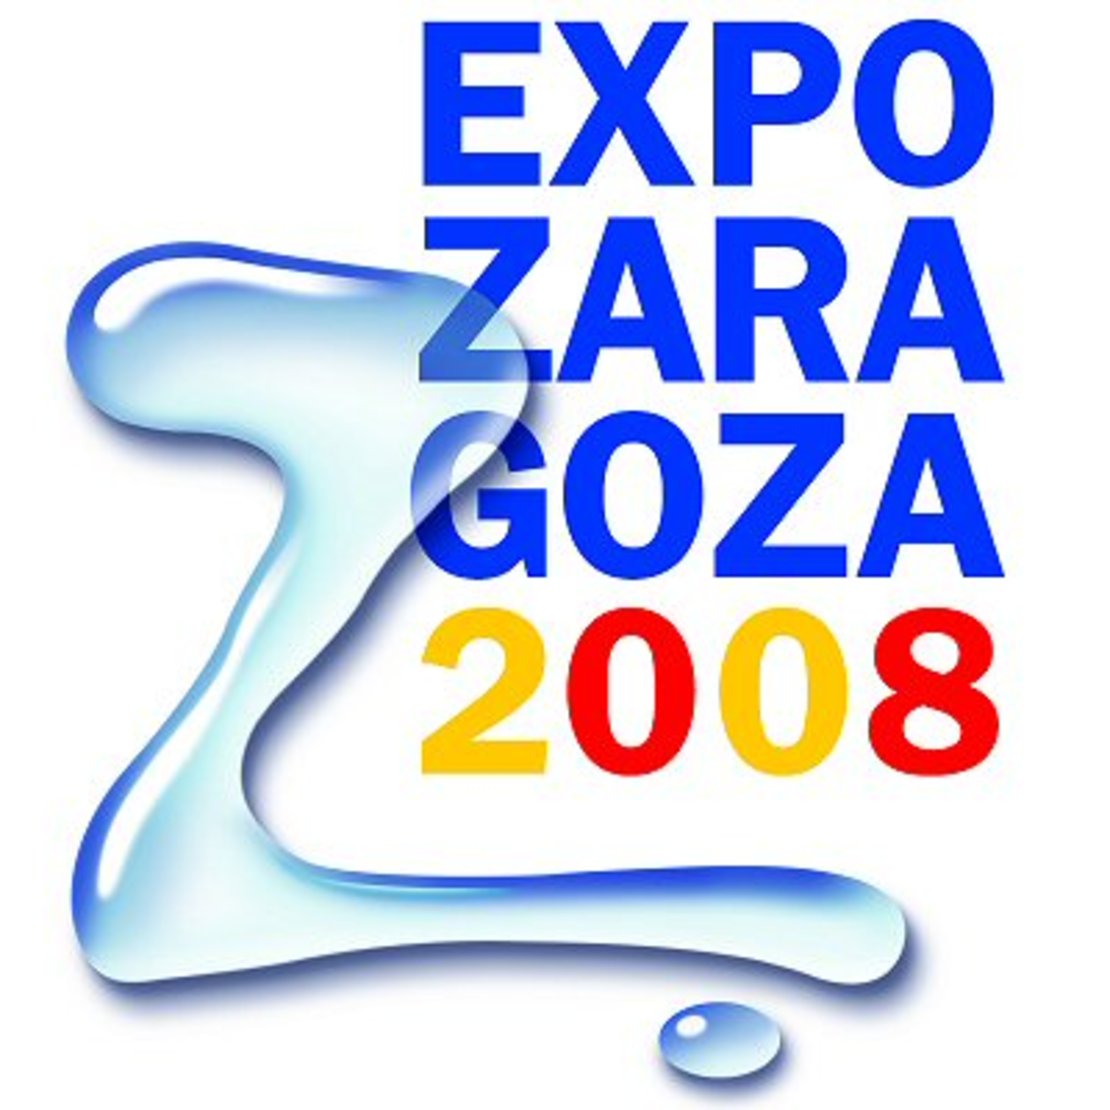 Expo Zaragoza 2008 готовится к открытию